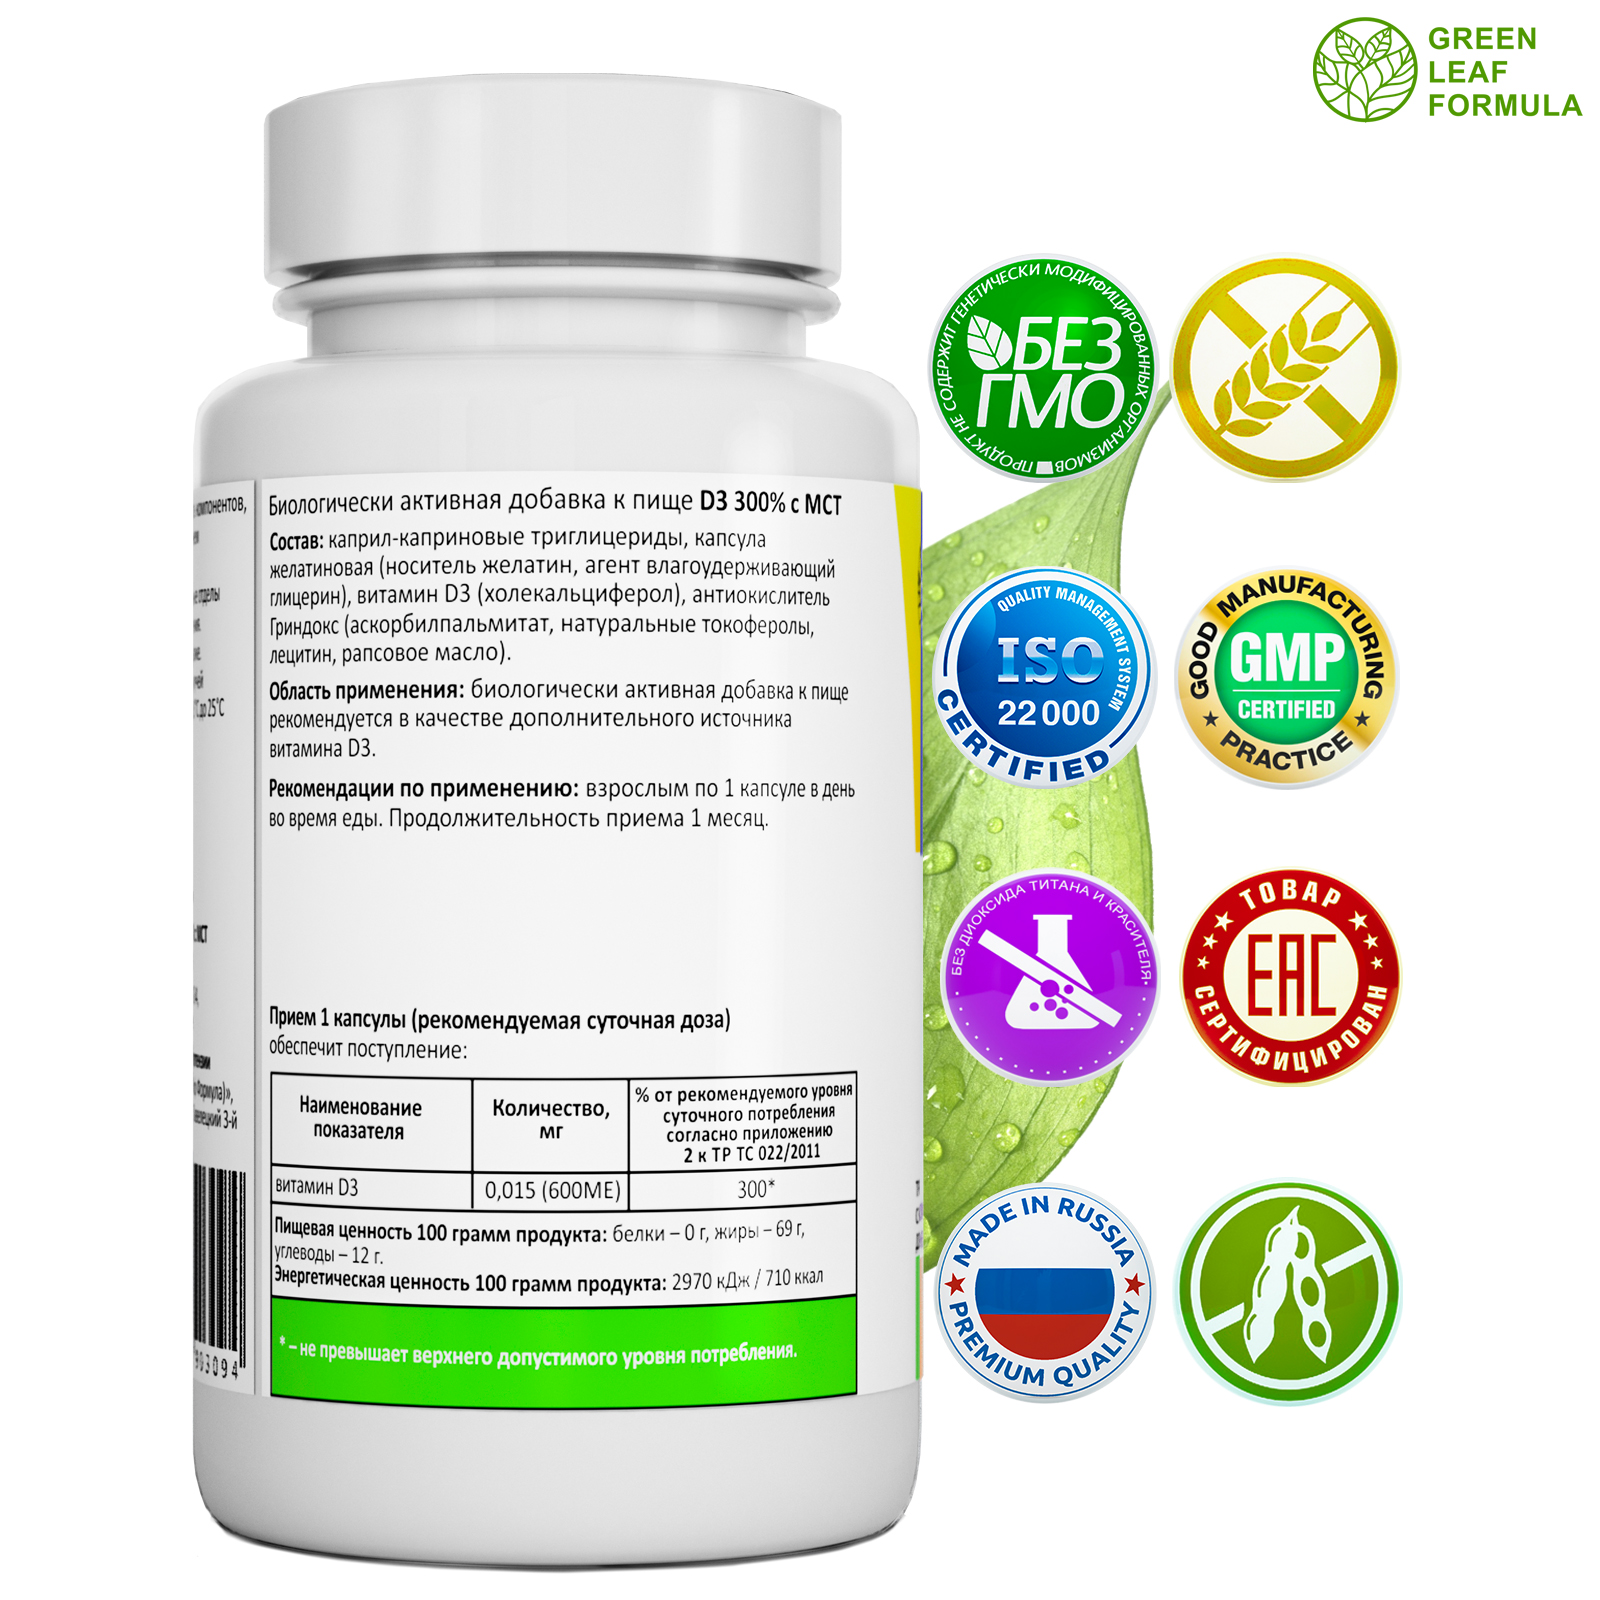 Пробиотик для женщин Green Leaf Formula фитоэстрогены витамин Д3 600 МЕ масло МСТ для энергии - фото 10